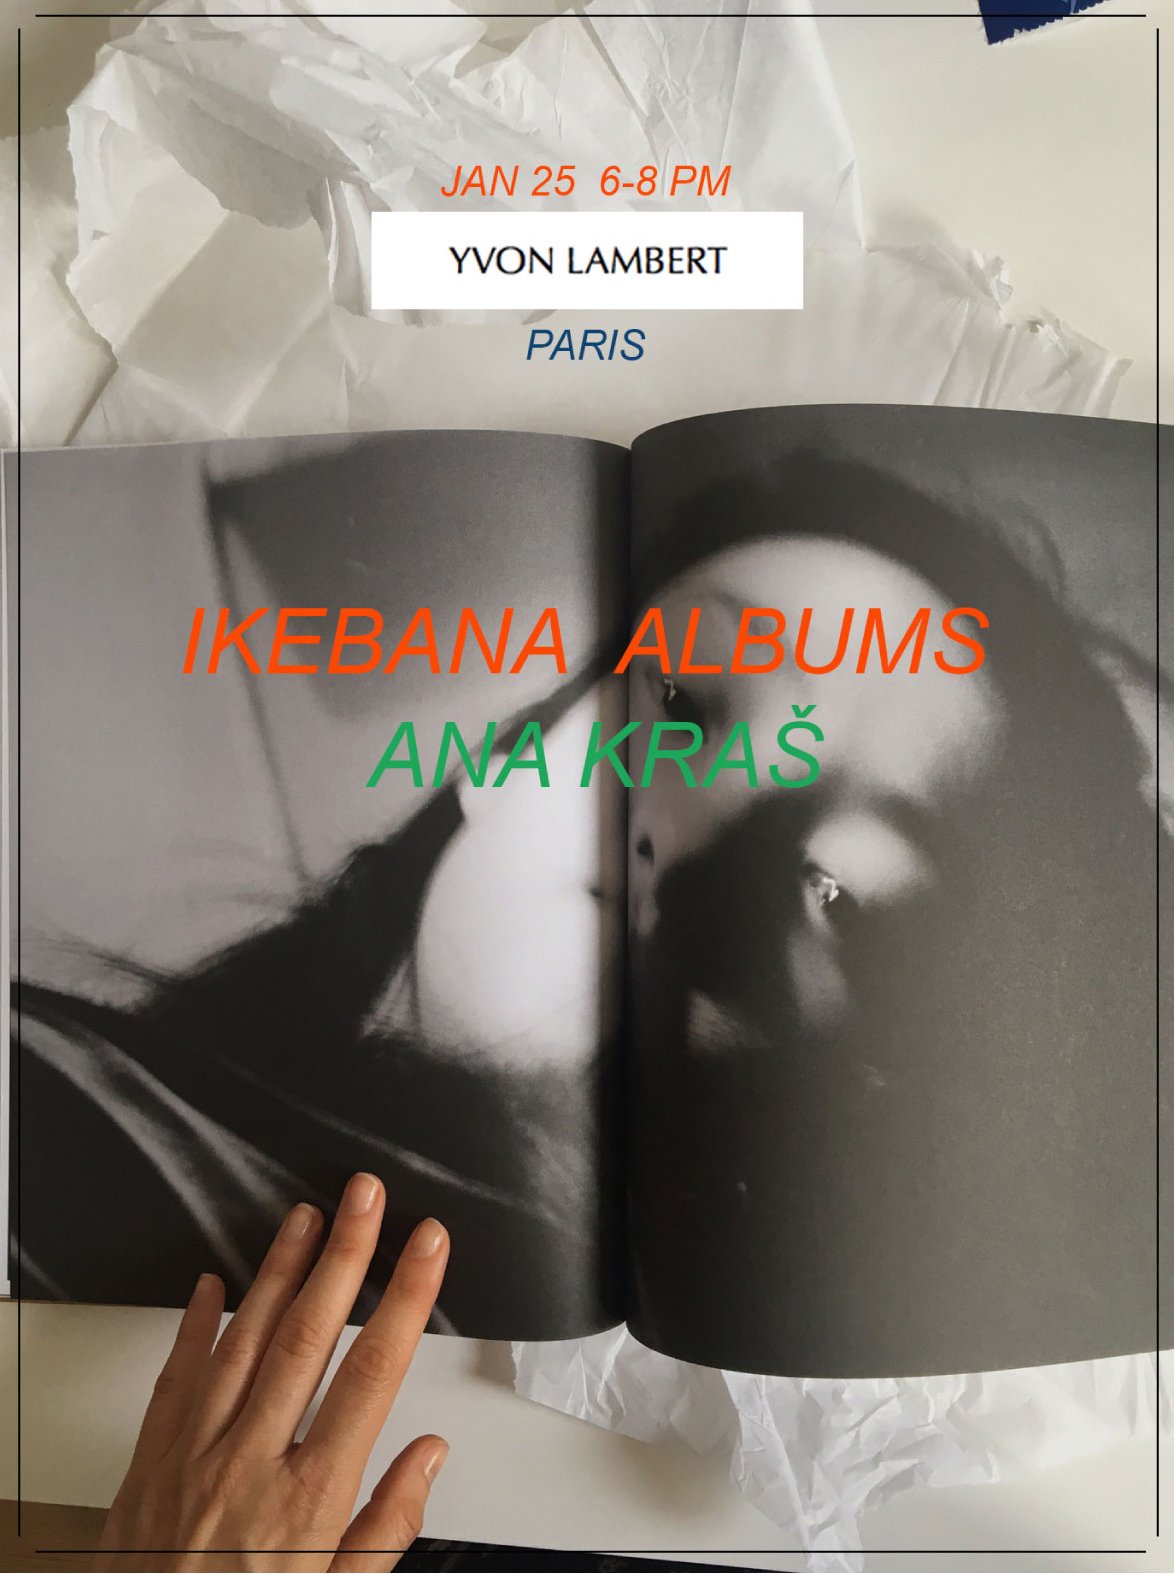 Ana Kraš - Ikebana Albums